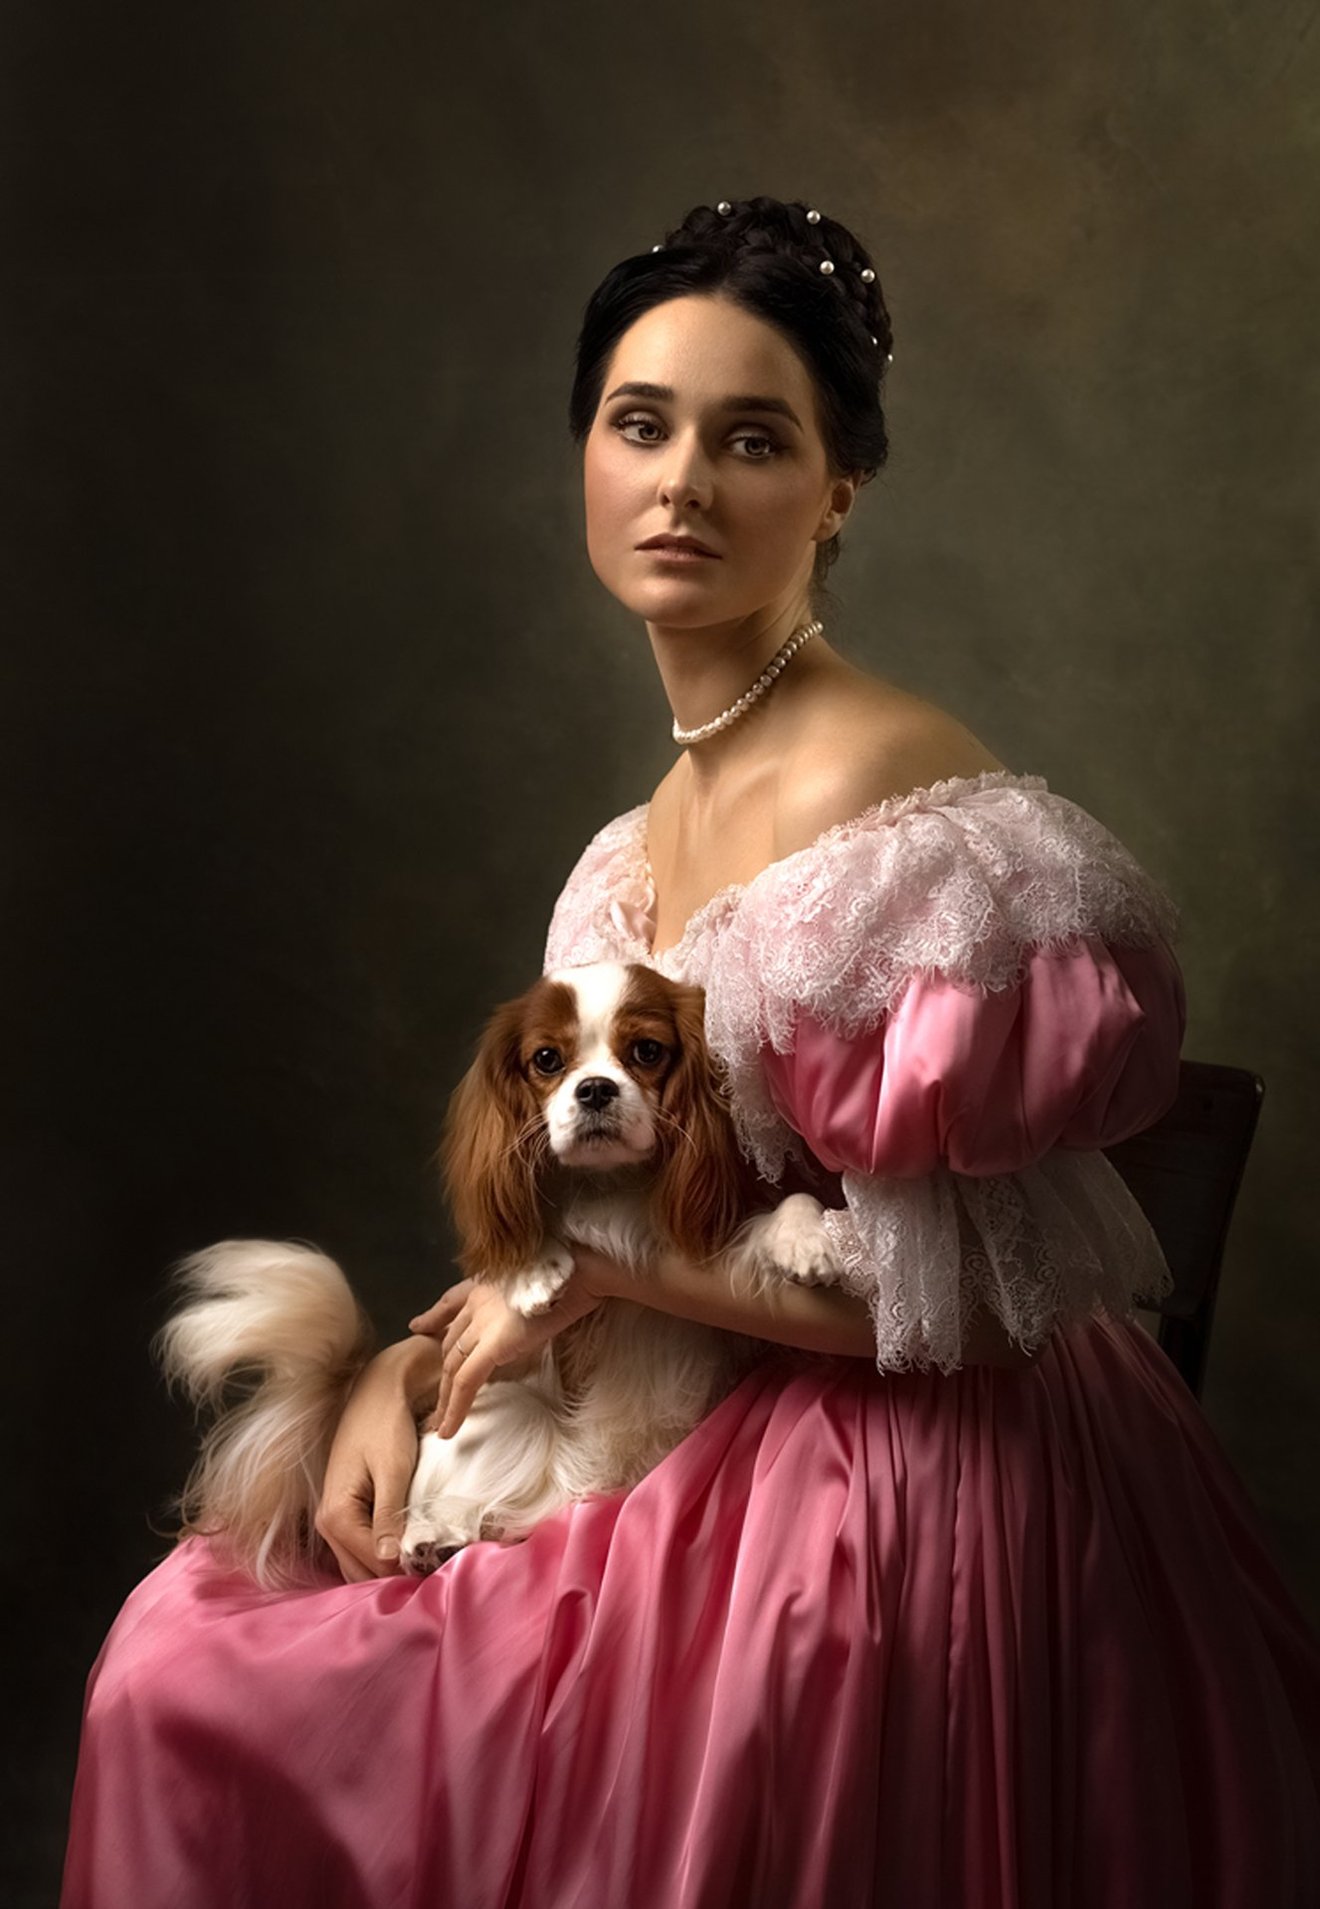 Lady with a dog-Seed Nft